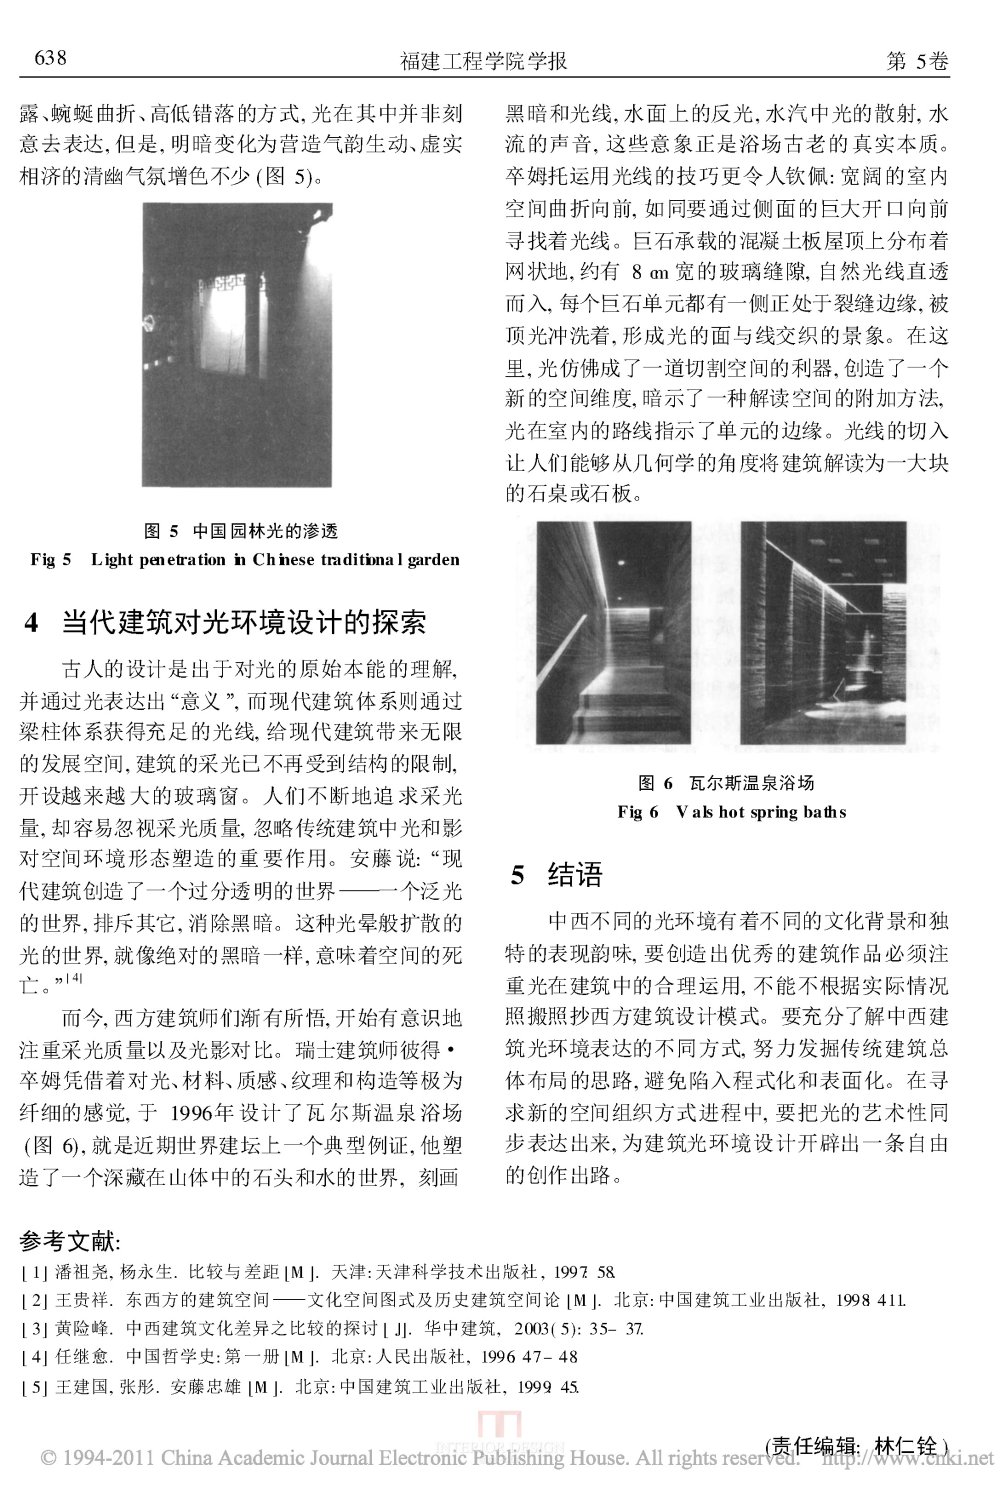 中西建筑光空间之比较_页面_4.jpg